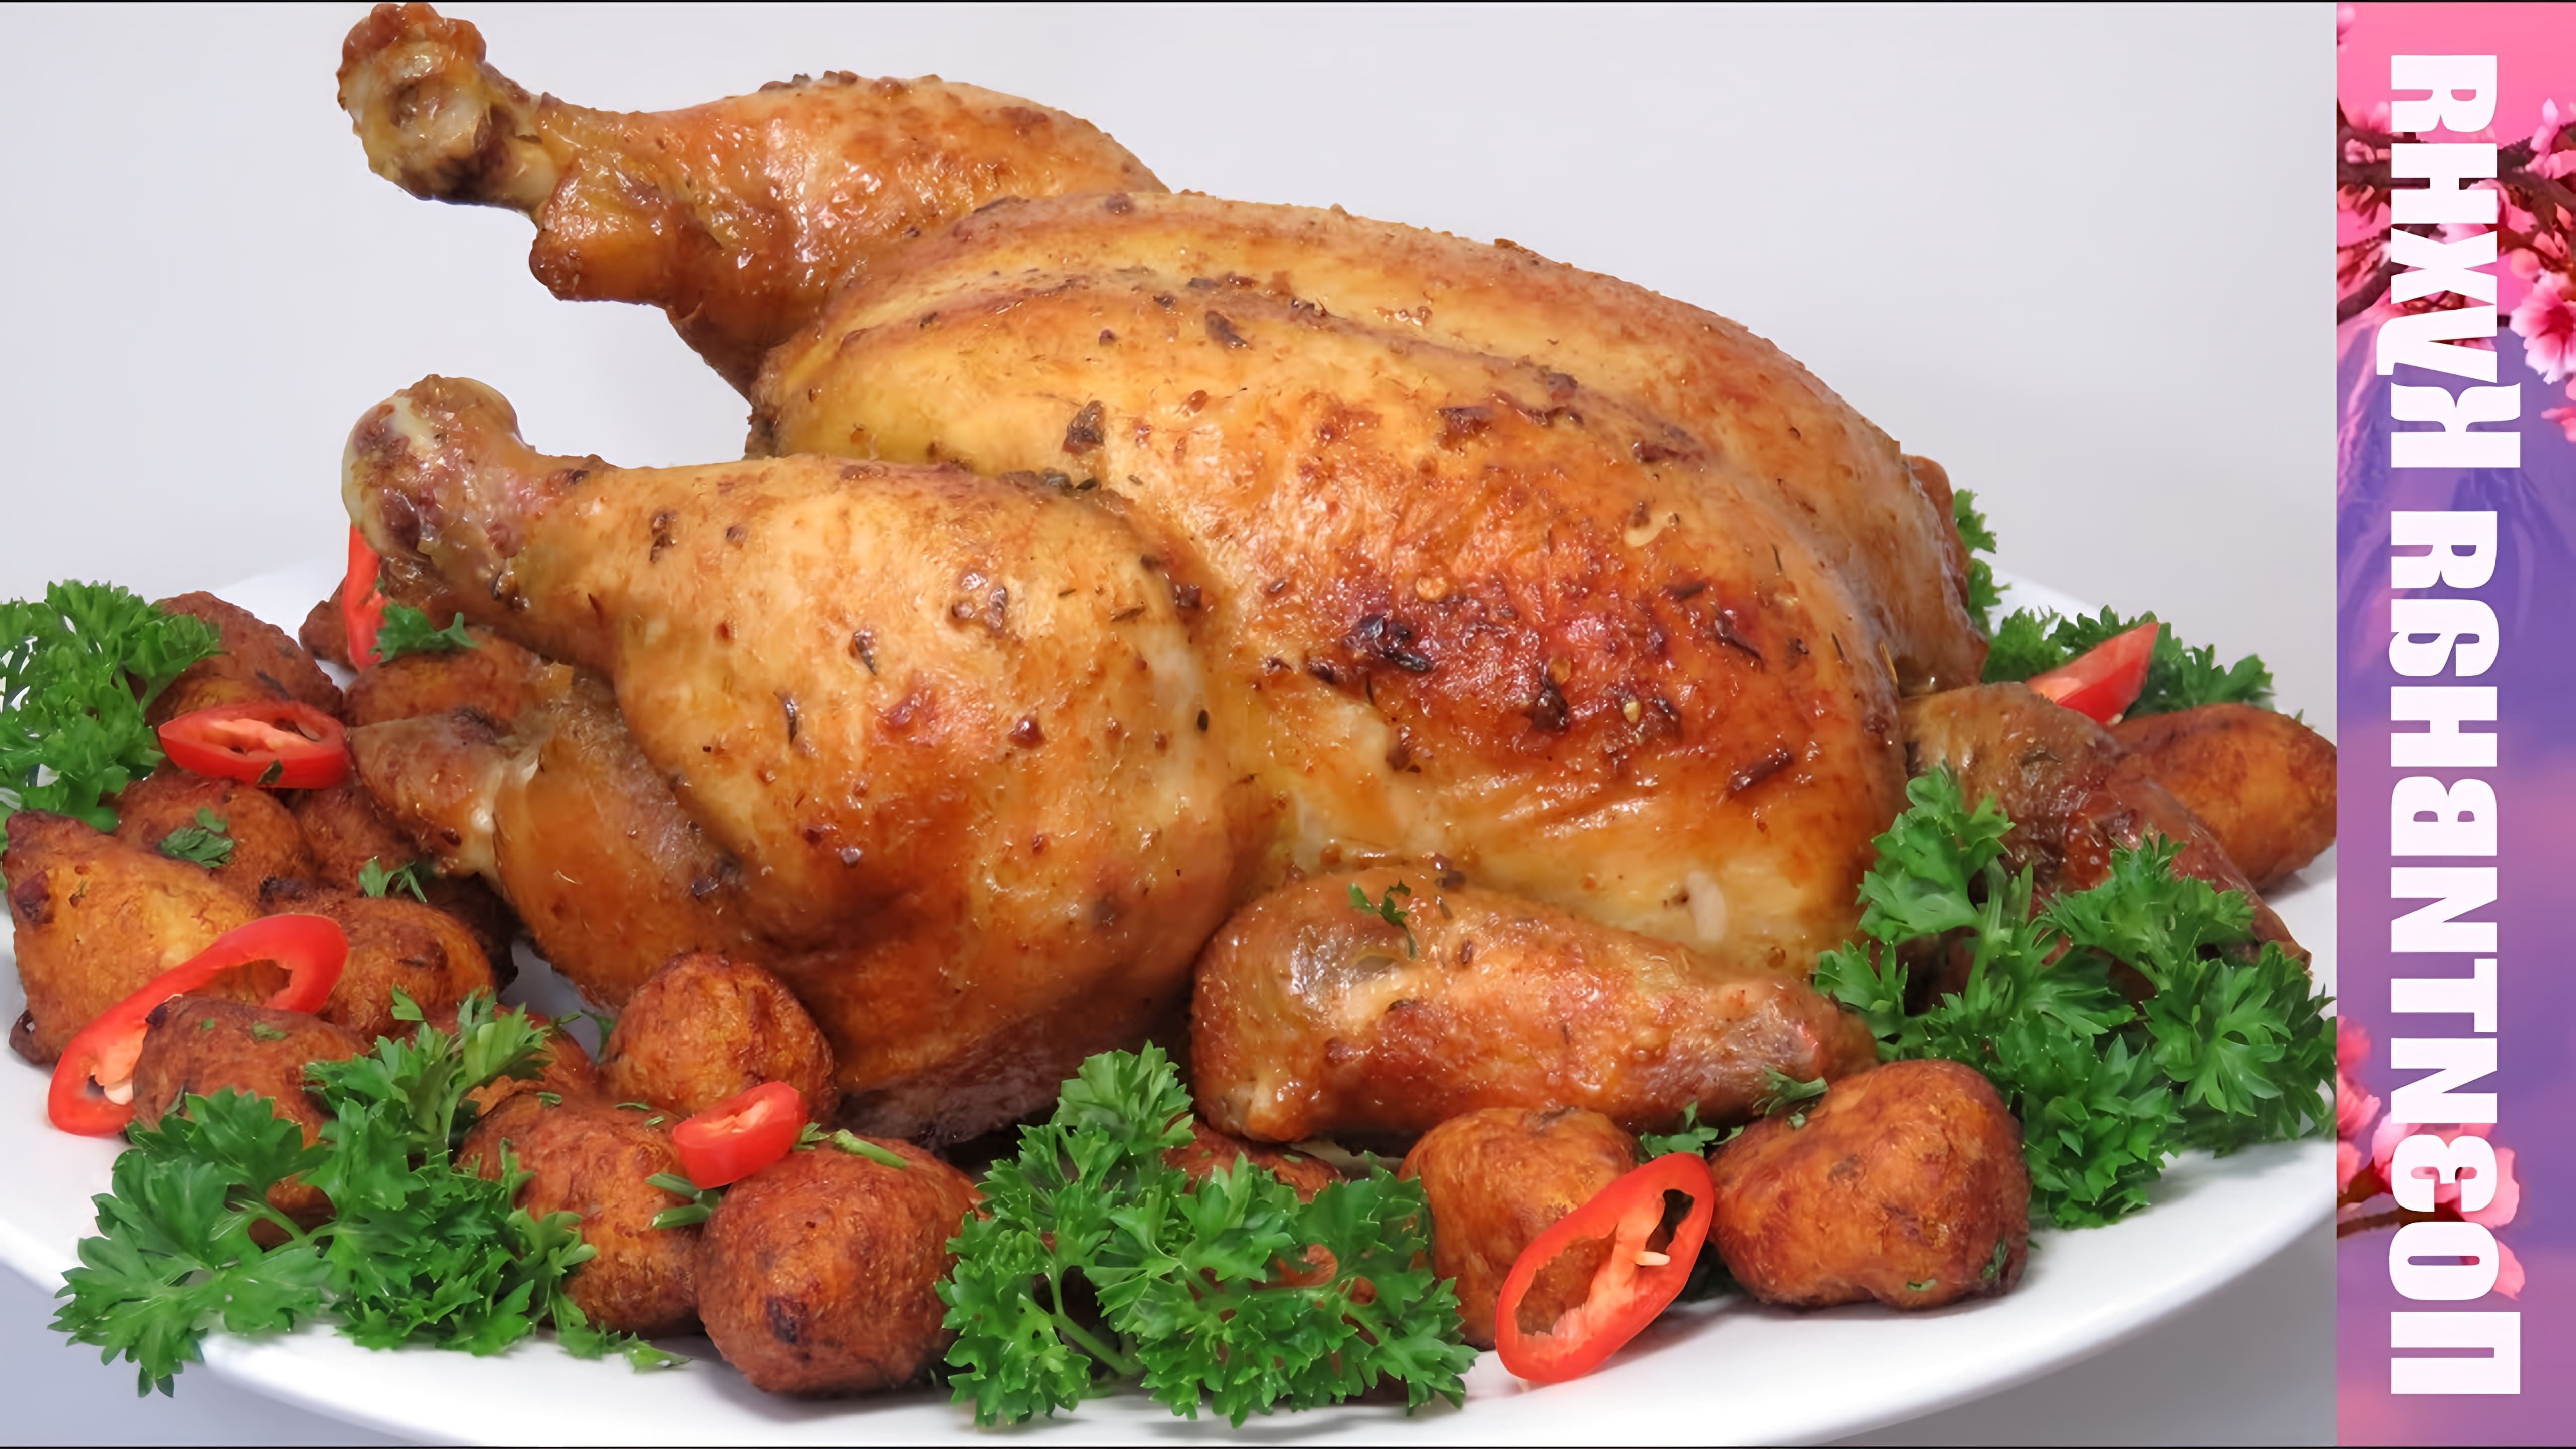 В этом видео демонстрируется рецепт приготовления сочной курицы гриль в духовке на новогодний стол